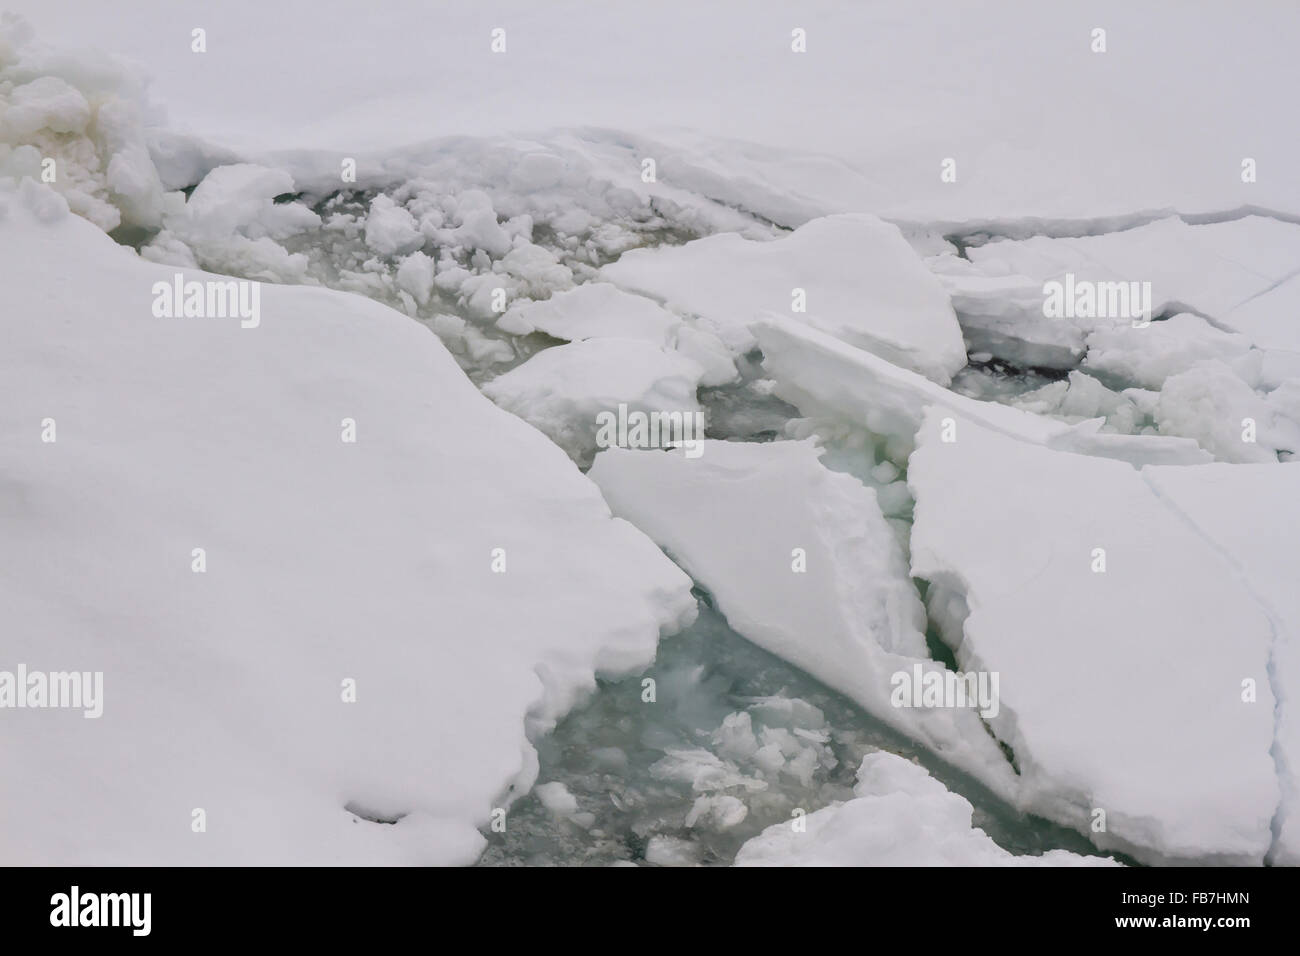 Nahaufnahme von Packeis, Growlers und Bergie Bits schweben in der Antarktis. Stockfoto